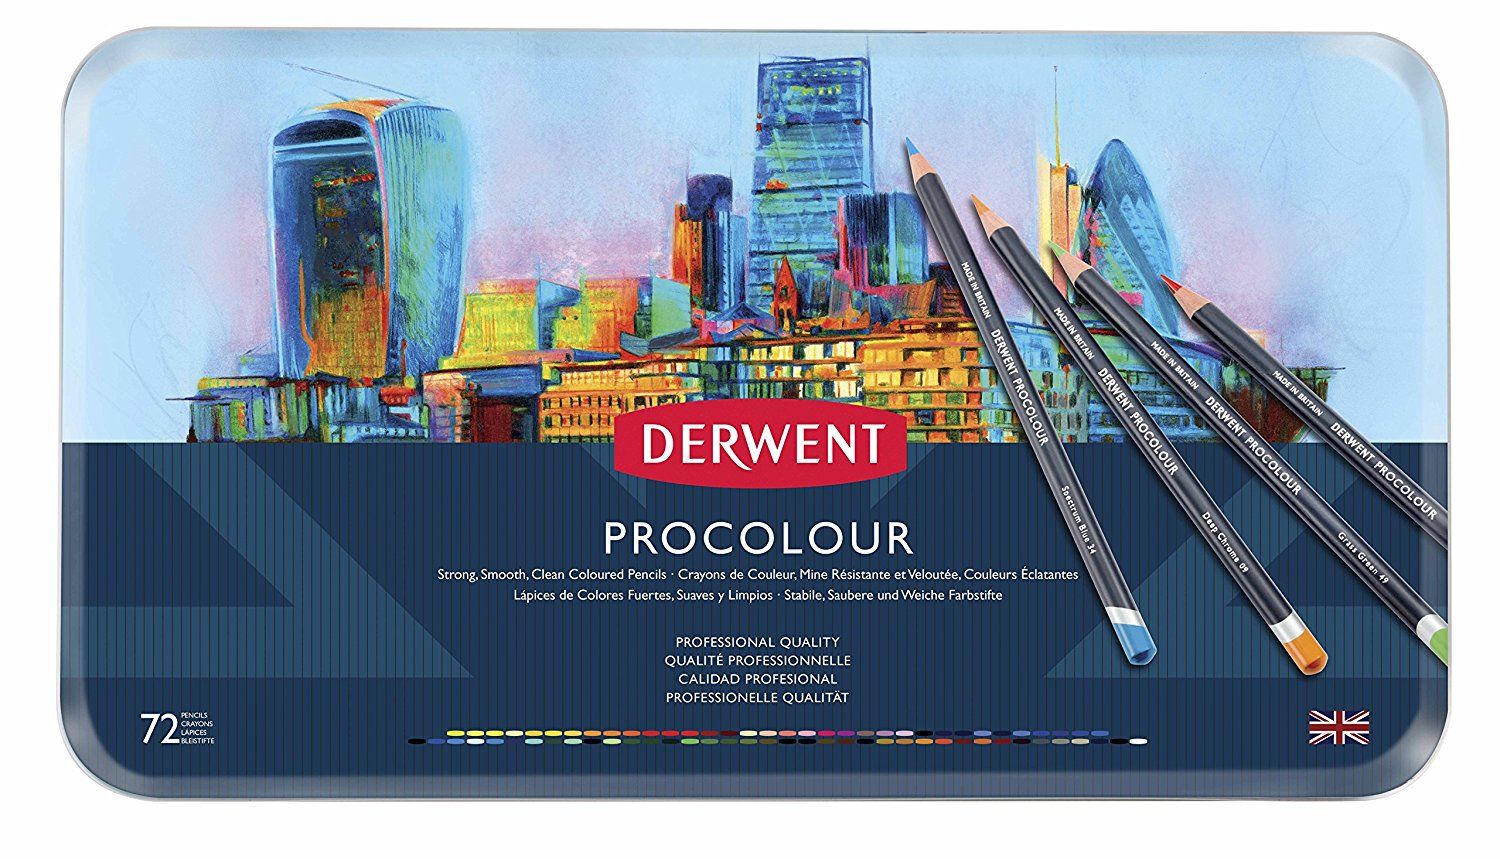 Derwent Procolour 72 Pencils Tin Set